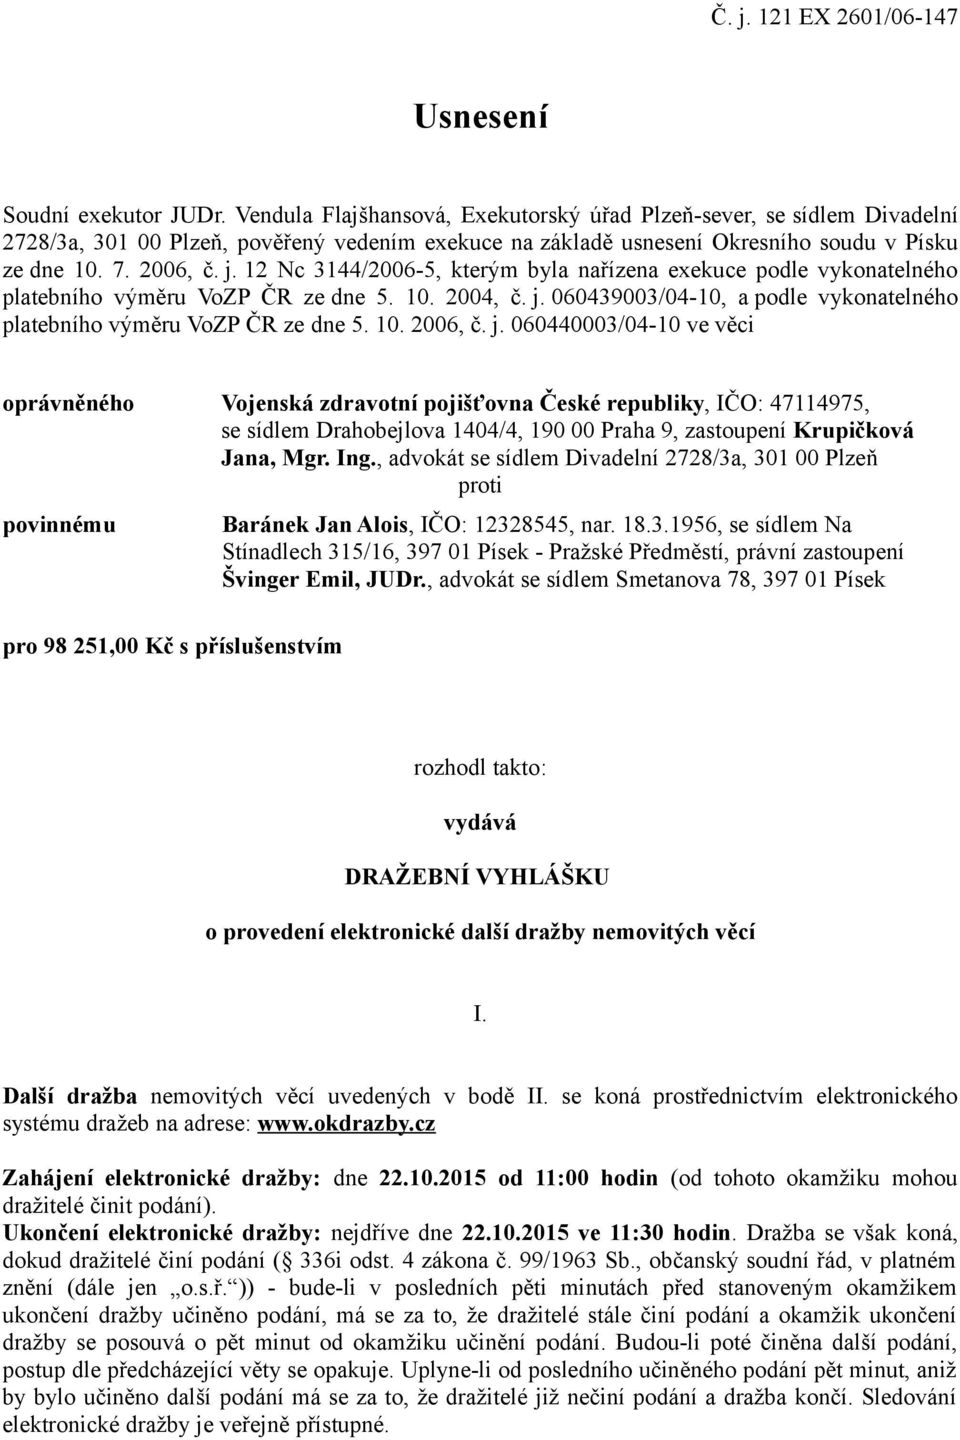 12 Nc 3144/2006-5, kterým byla nařízena exekuce podle vykonatelného platebního výměru VoZP ČR ze dne 5. 10. 2004, č. j. 060439003/04-10, a podle vykonatelného platebního výměru VoZP ČR ze dne 5. 10. 2006, č.